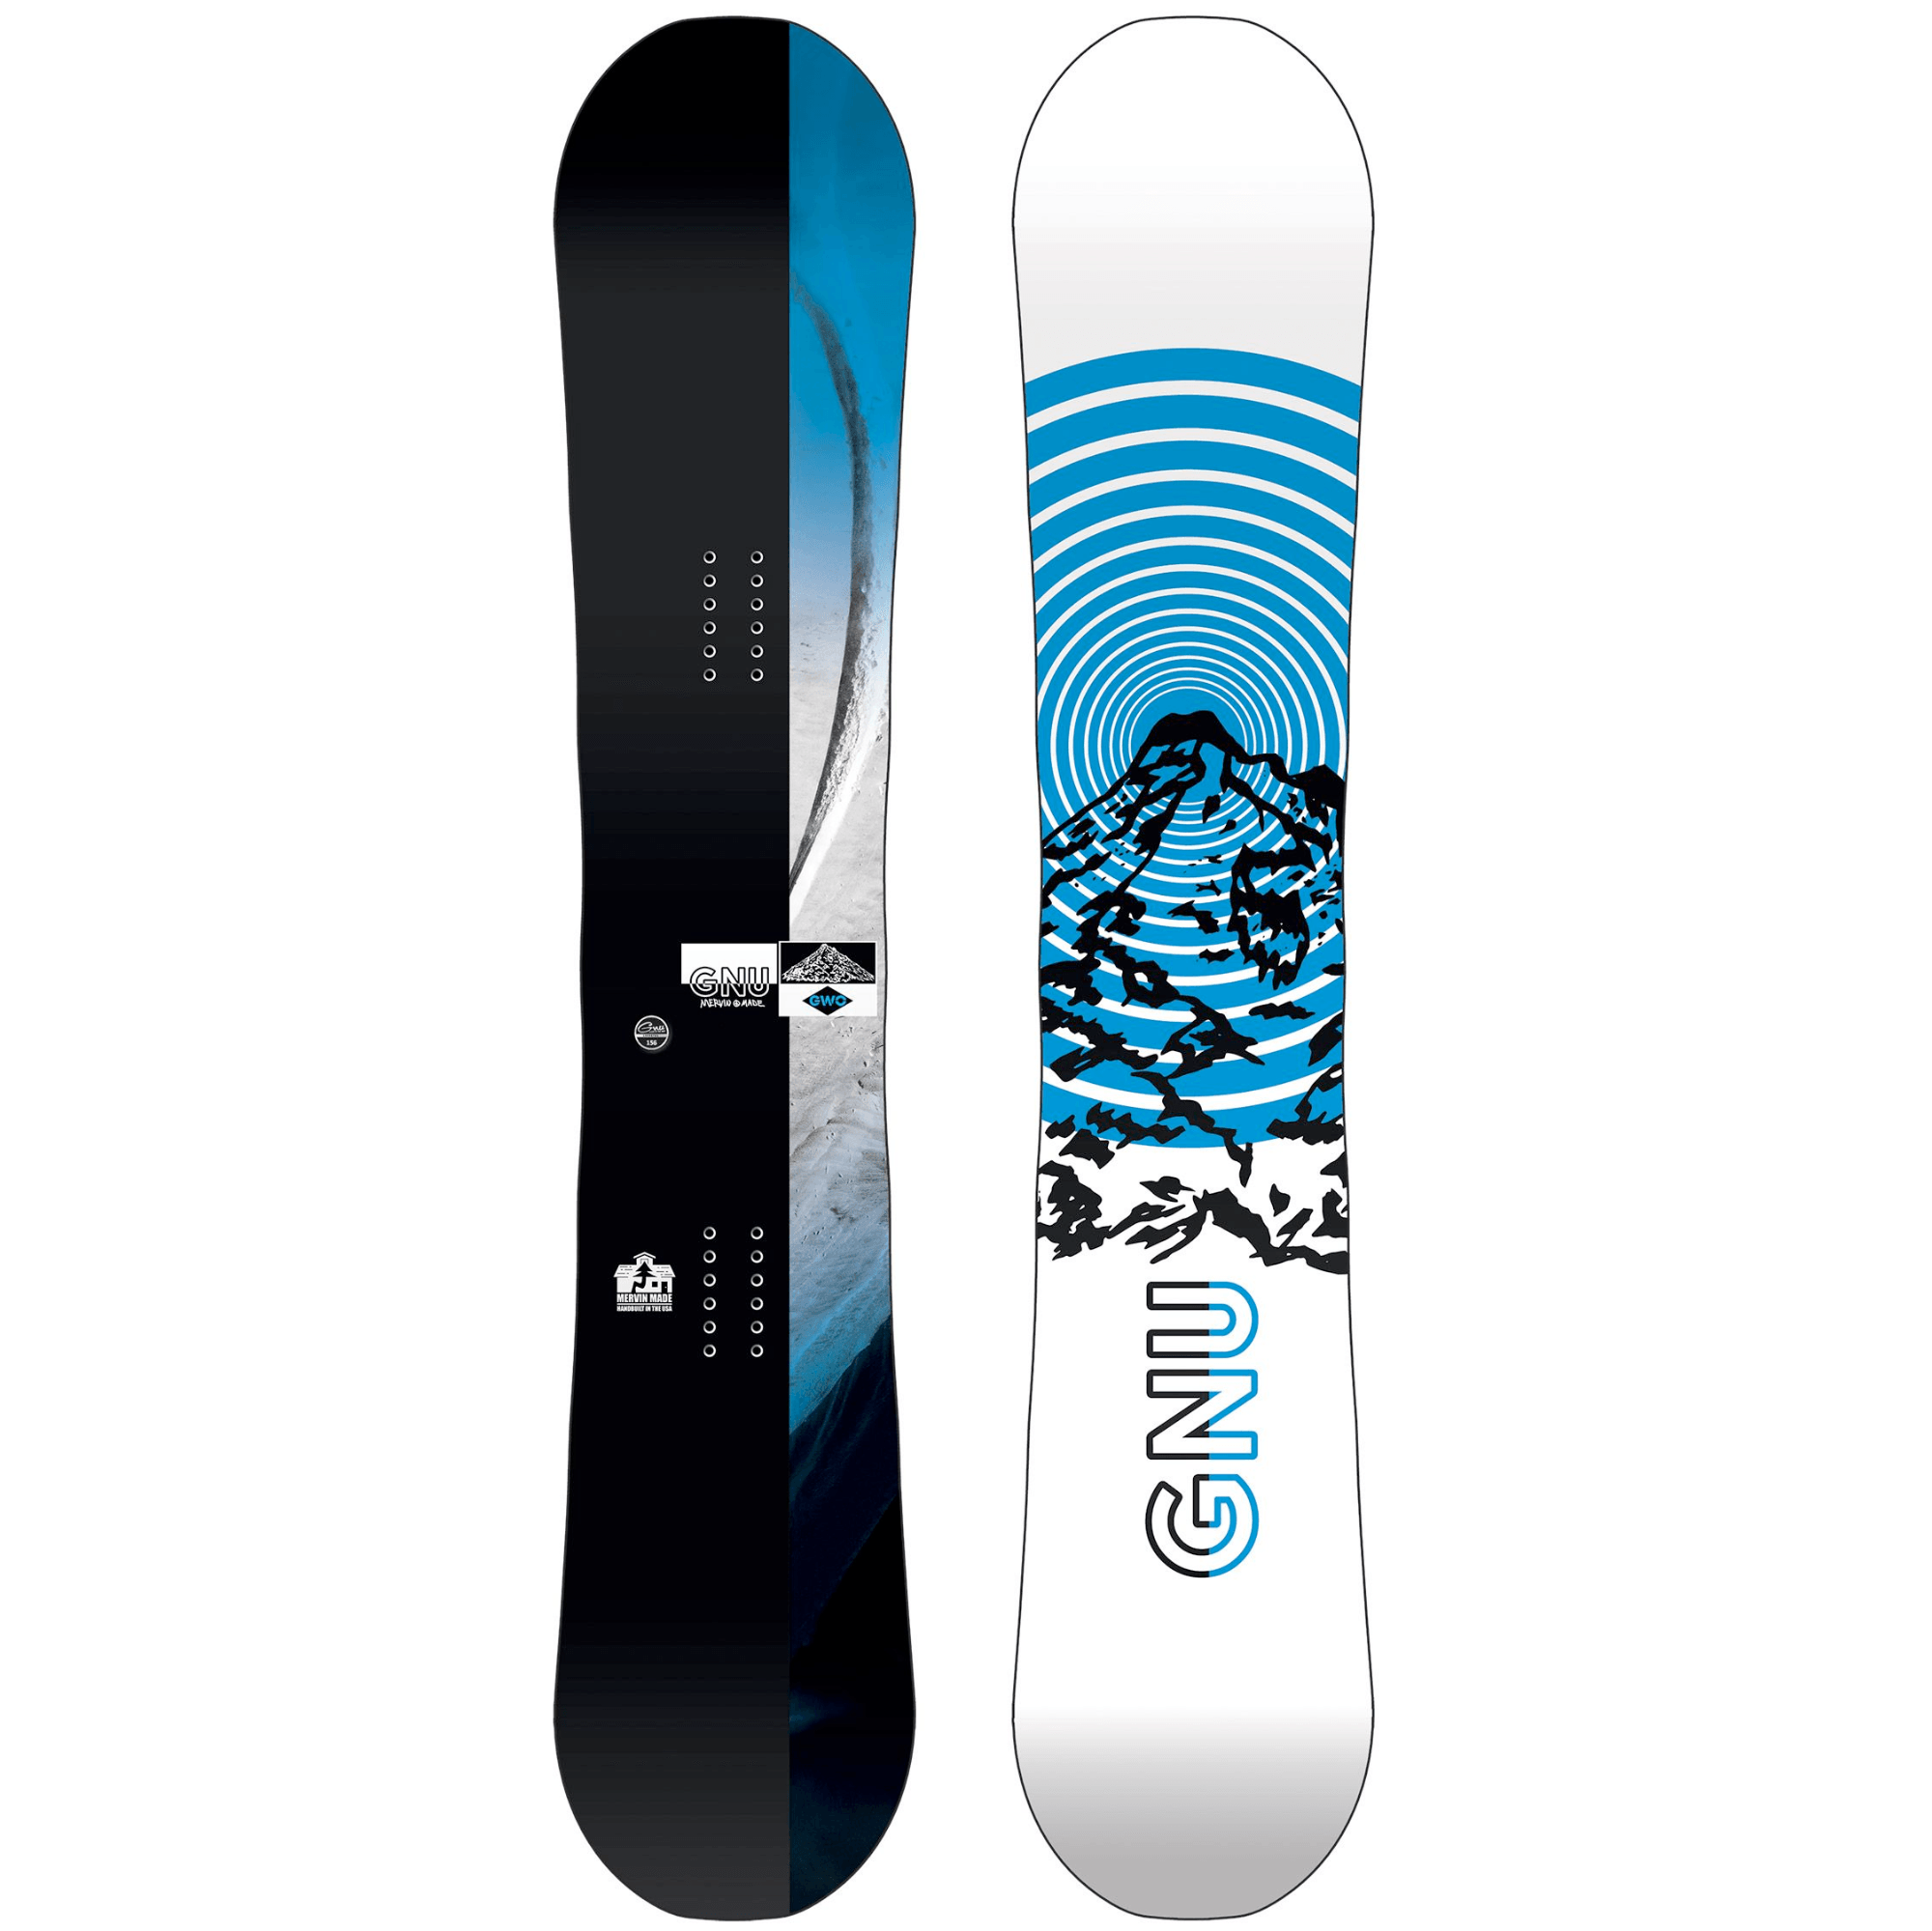 WHITESPACE Freestyle Shaun White Pro Snowboard - 2023 - Snowboard